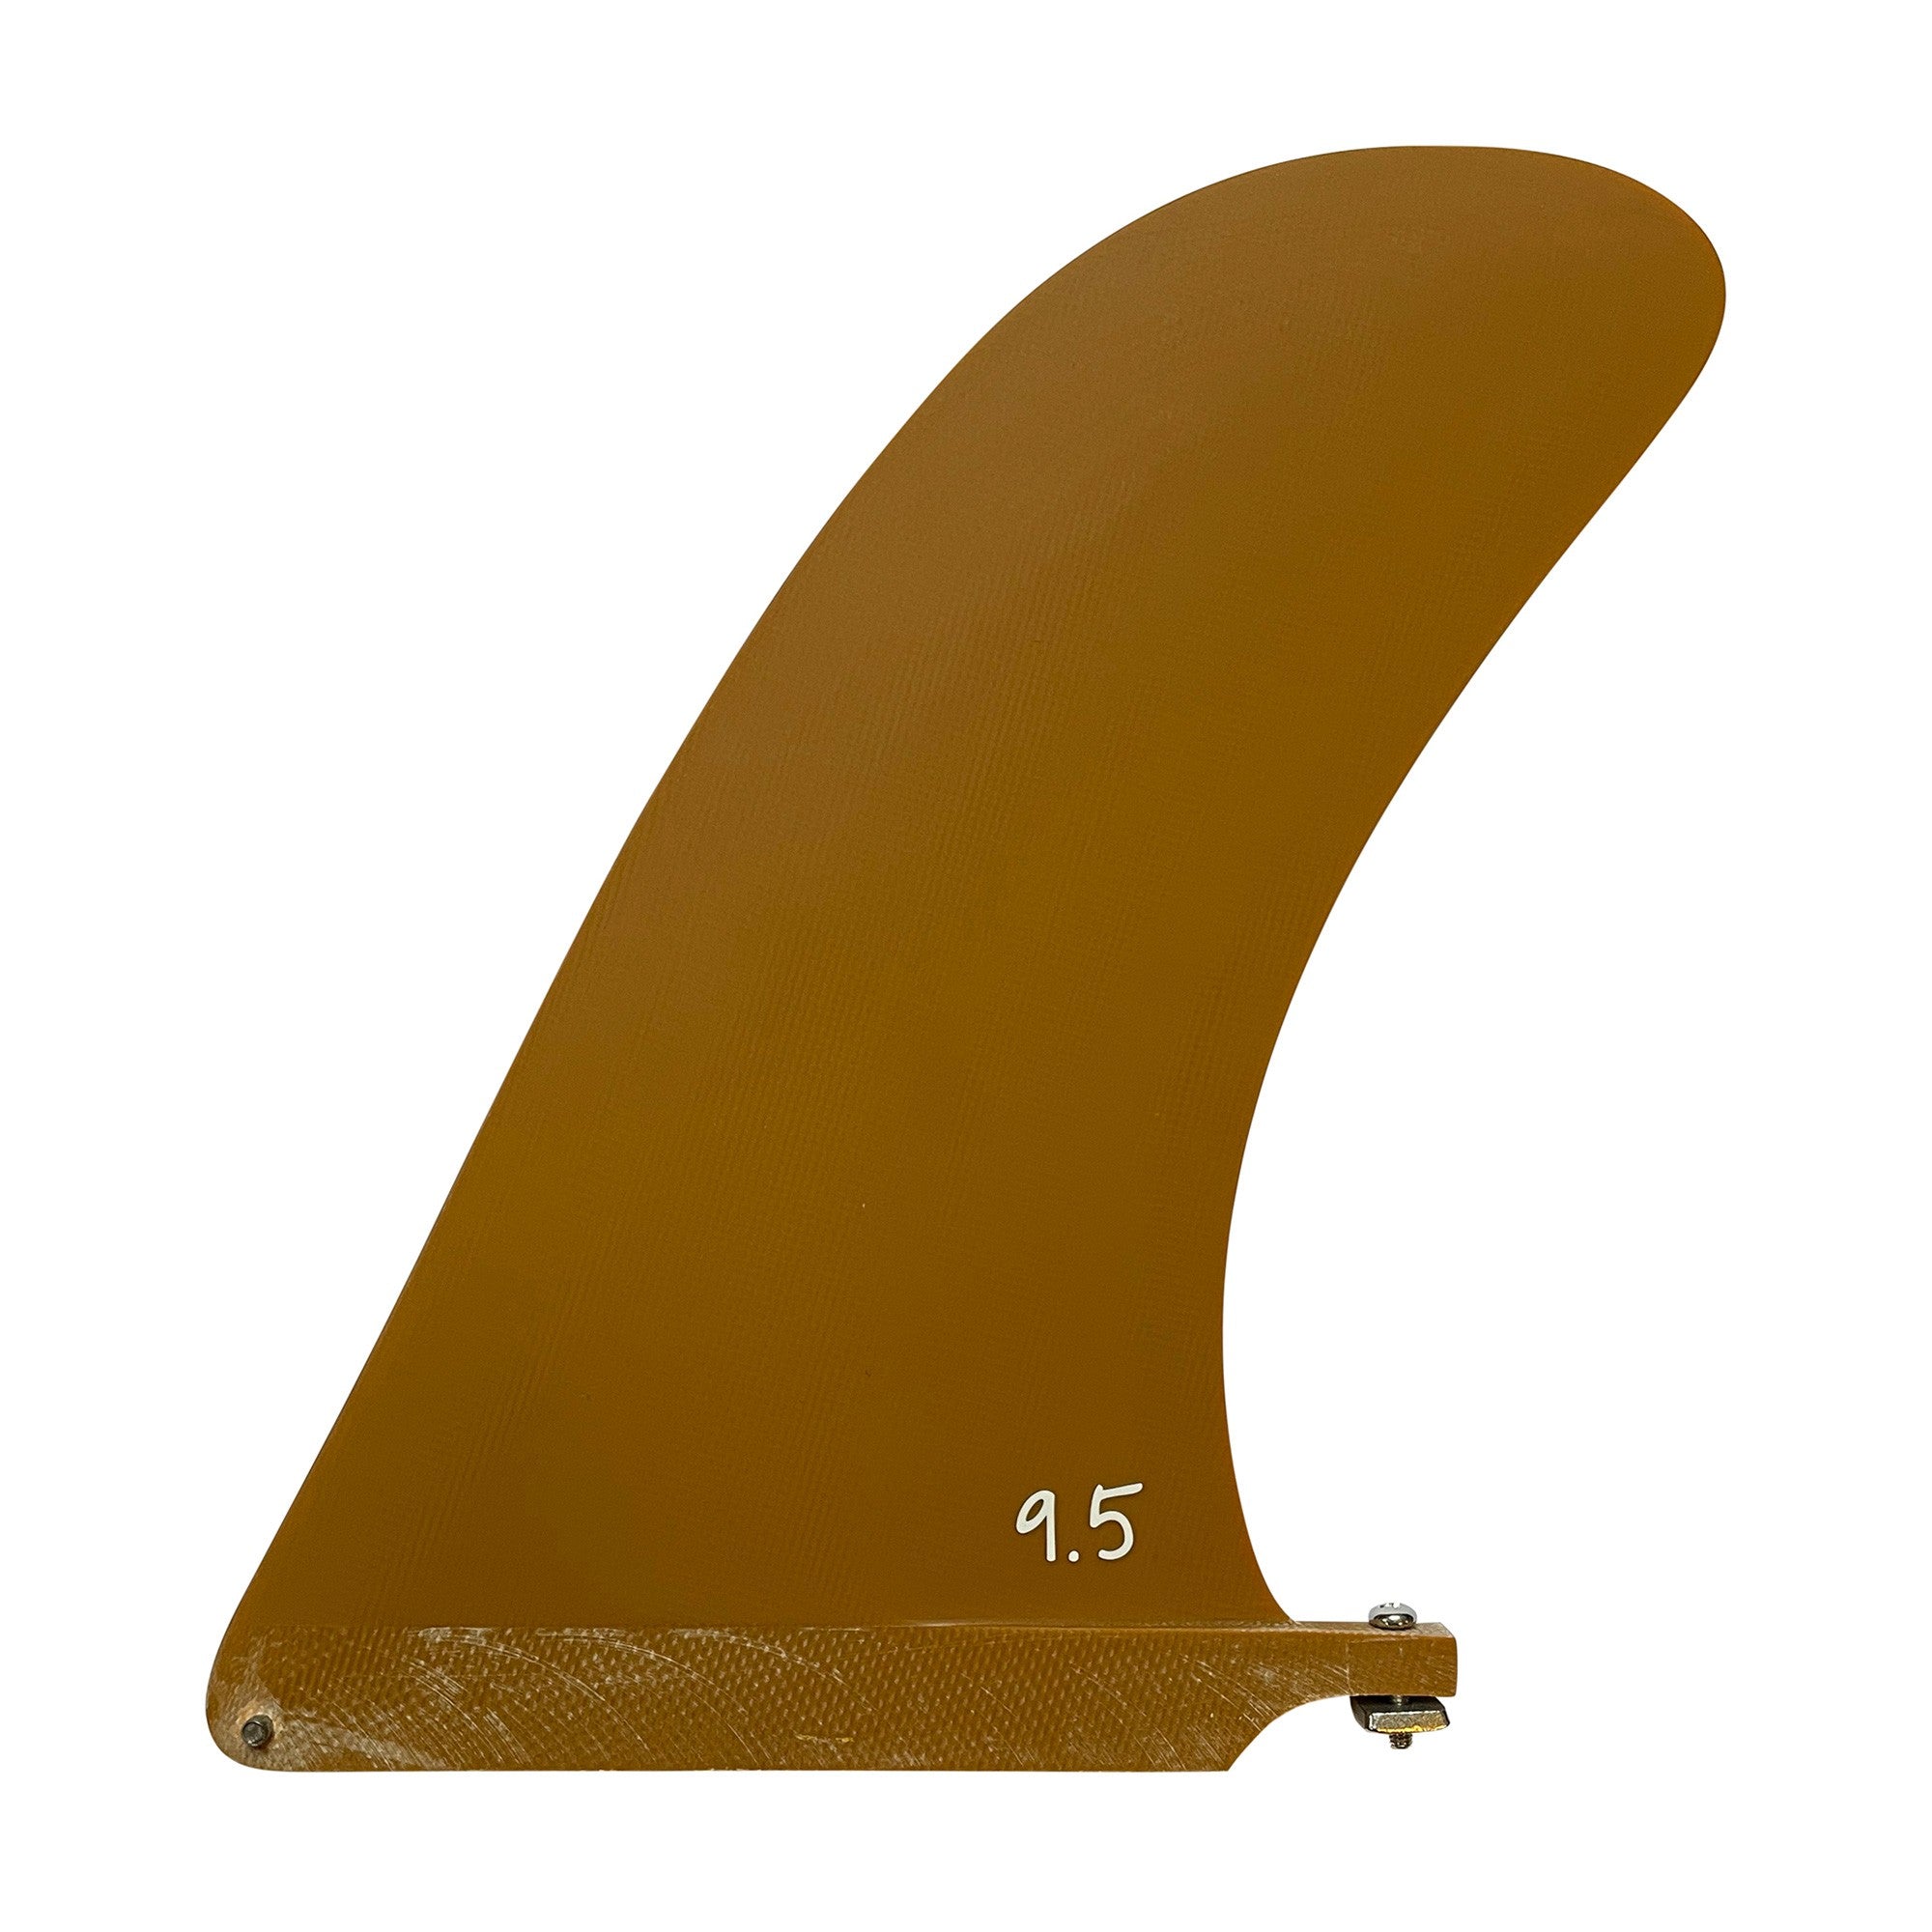 SISTEMA DE SURF - Aleta única de fibra de vidrio con pivote 9.5 (caja de EE. UU.) - Aguacate